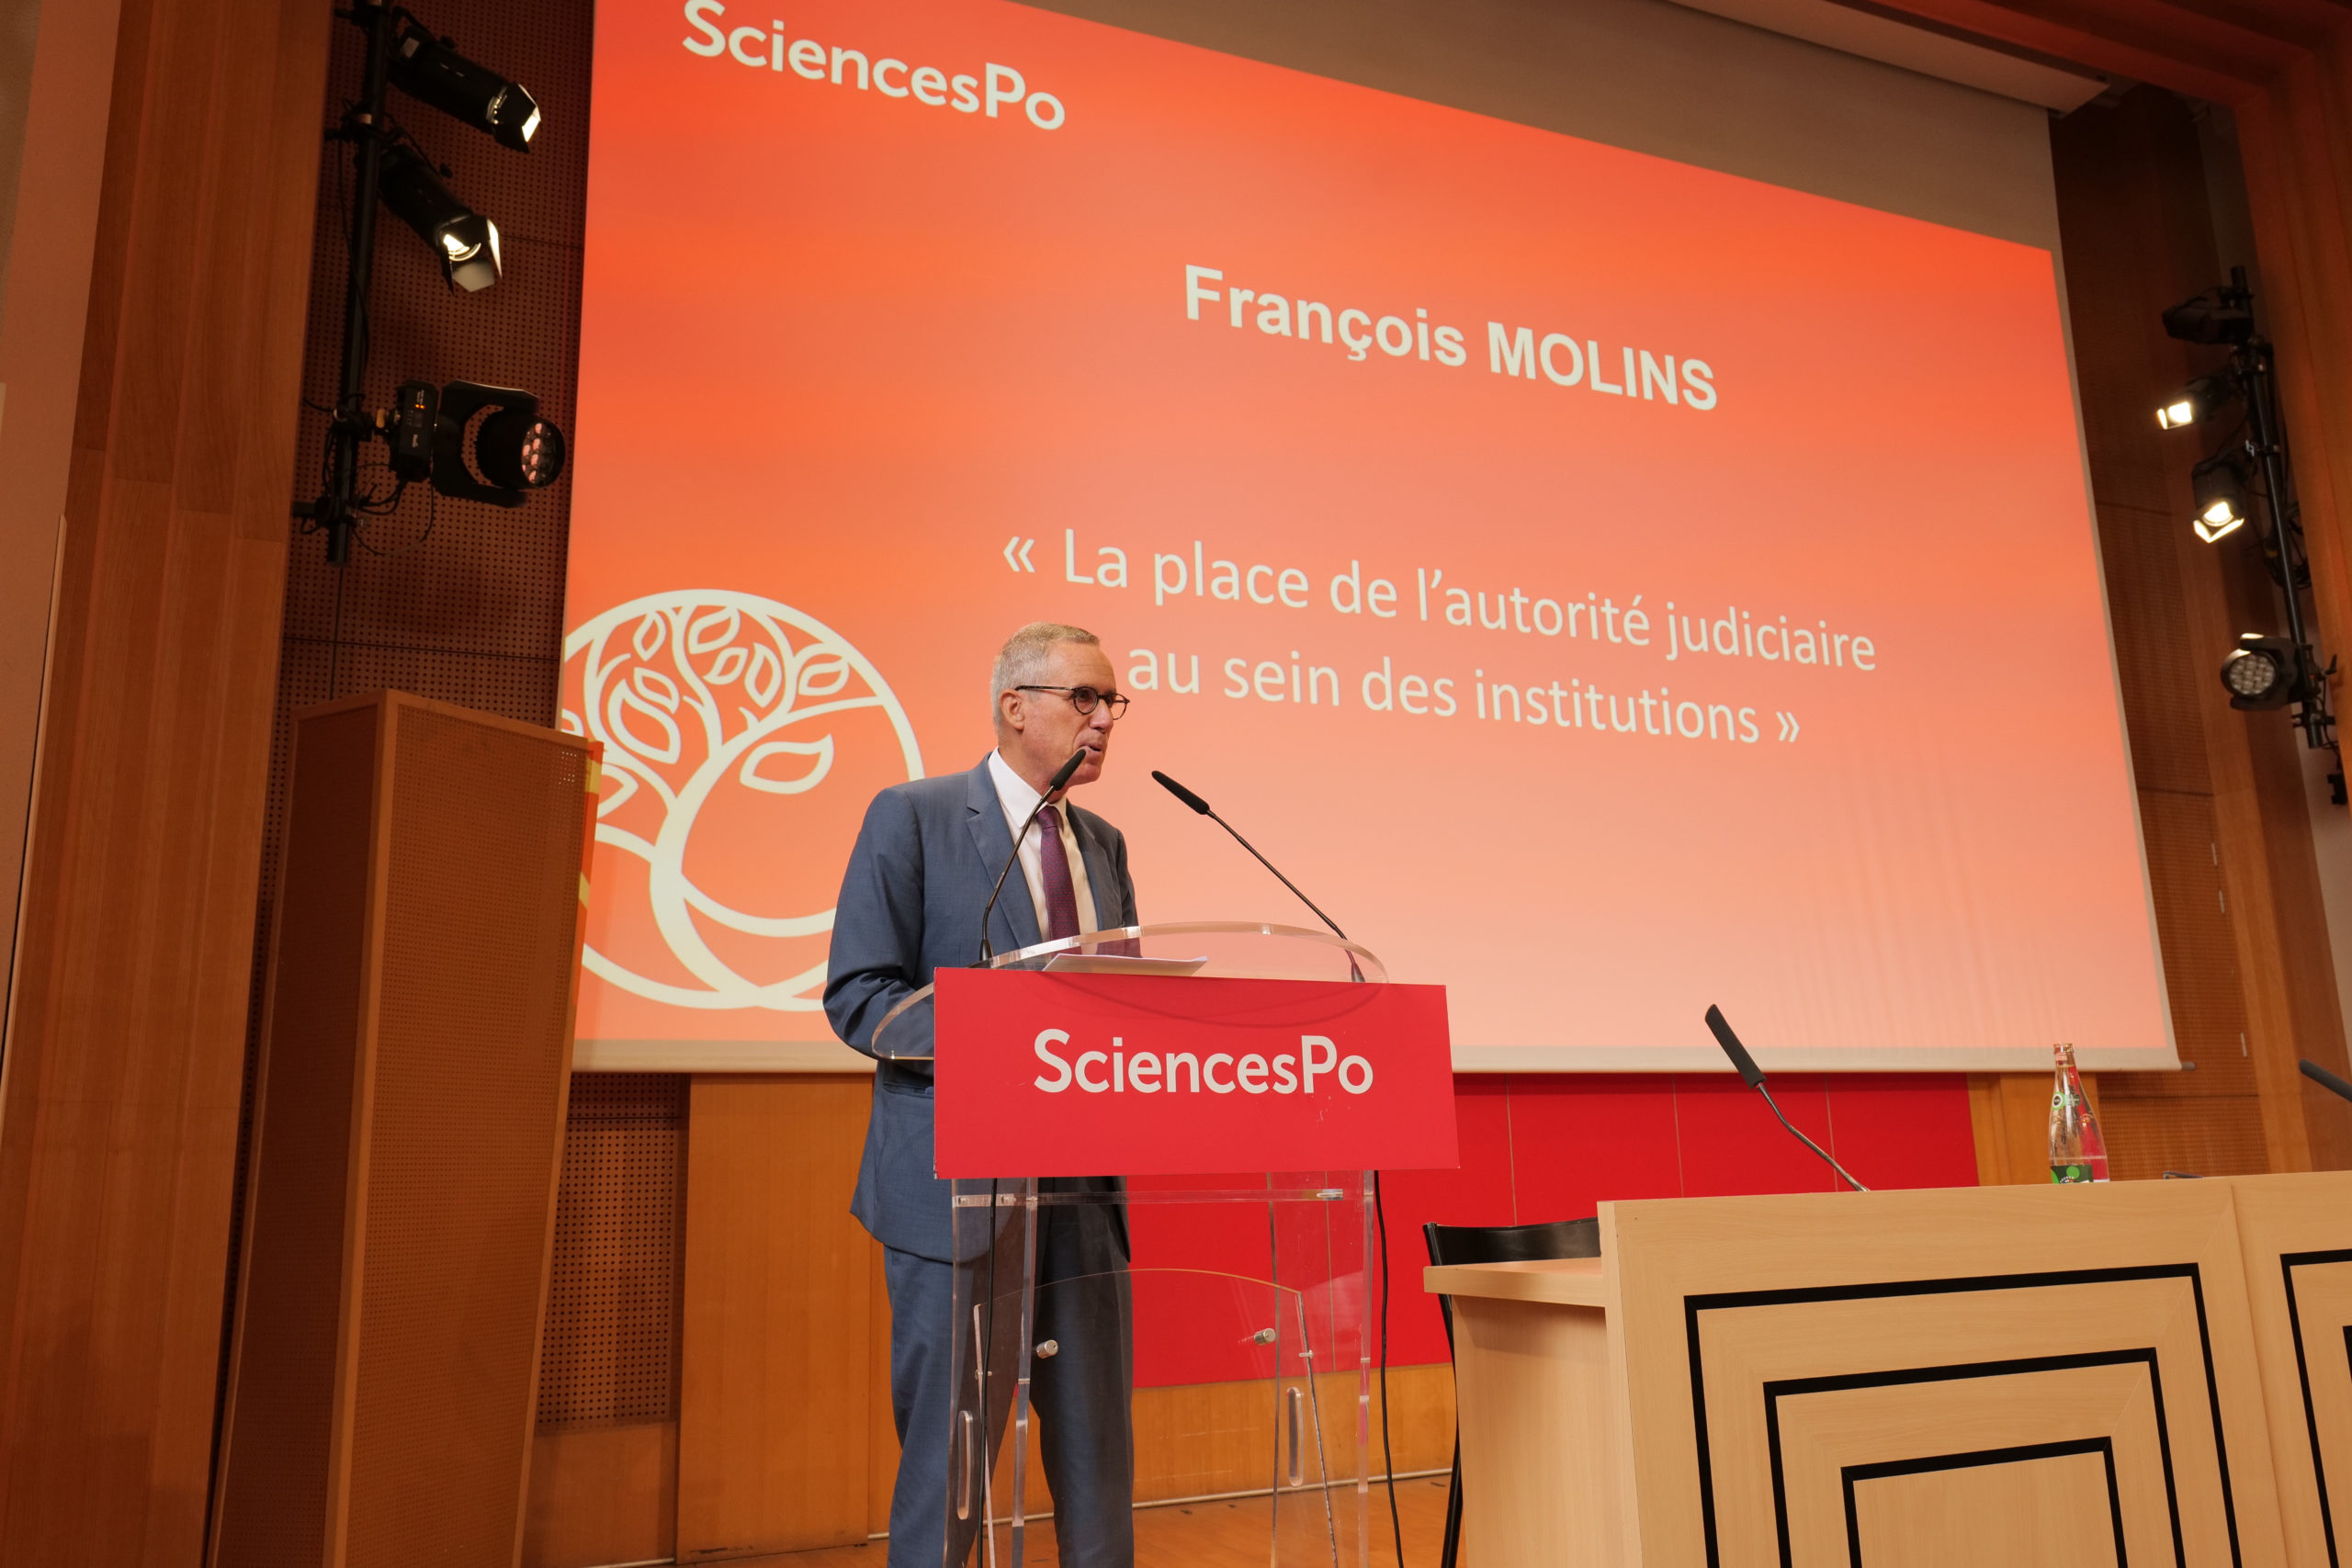 Le magistrat François Molins est chargé d'un cours sur l'antiterrorisme à Sciences Po